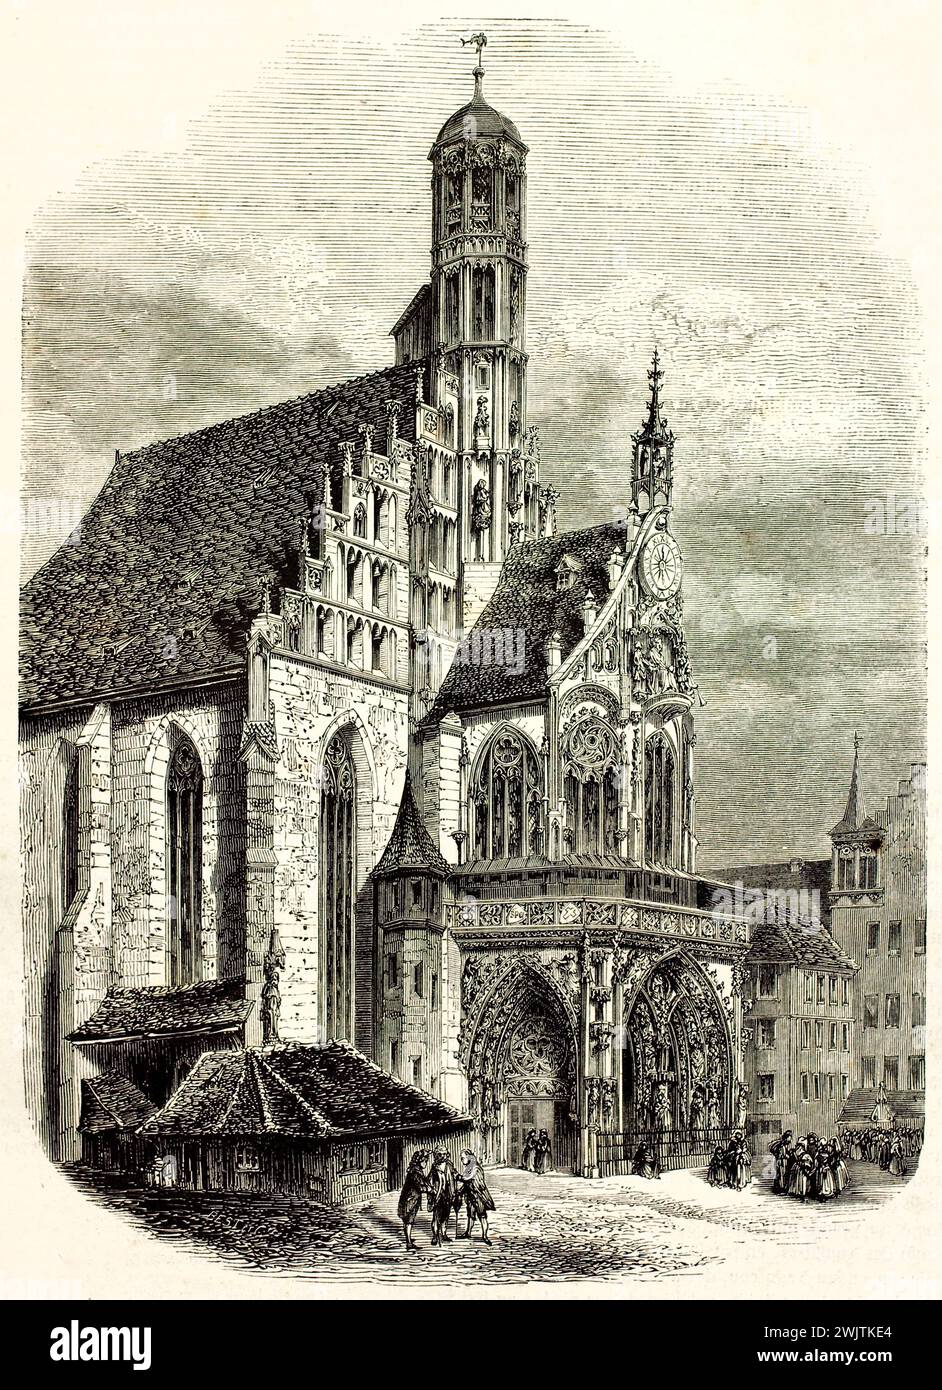 Alte Gravur-Illustration der Frauenkirche, Nürnberg. Erstellt von Lancelot, veröffentlicht auf Magasin Pittoresque, Paris, 1852. Stockfoto